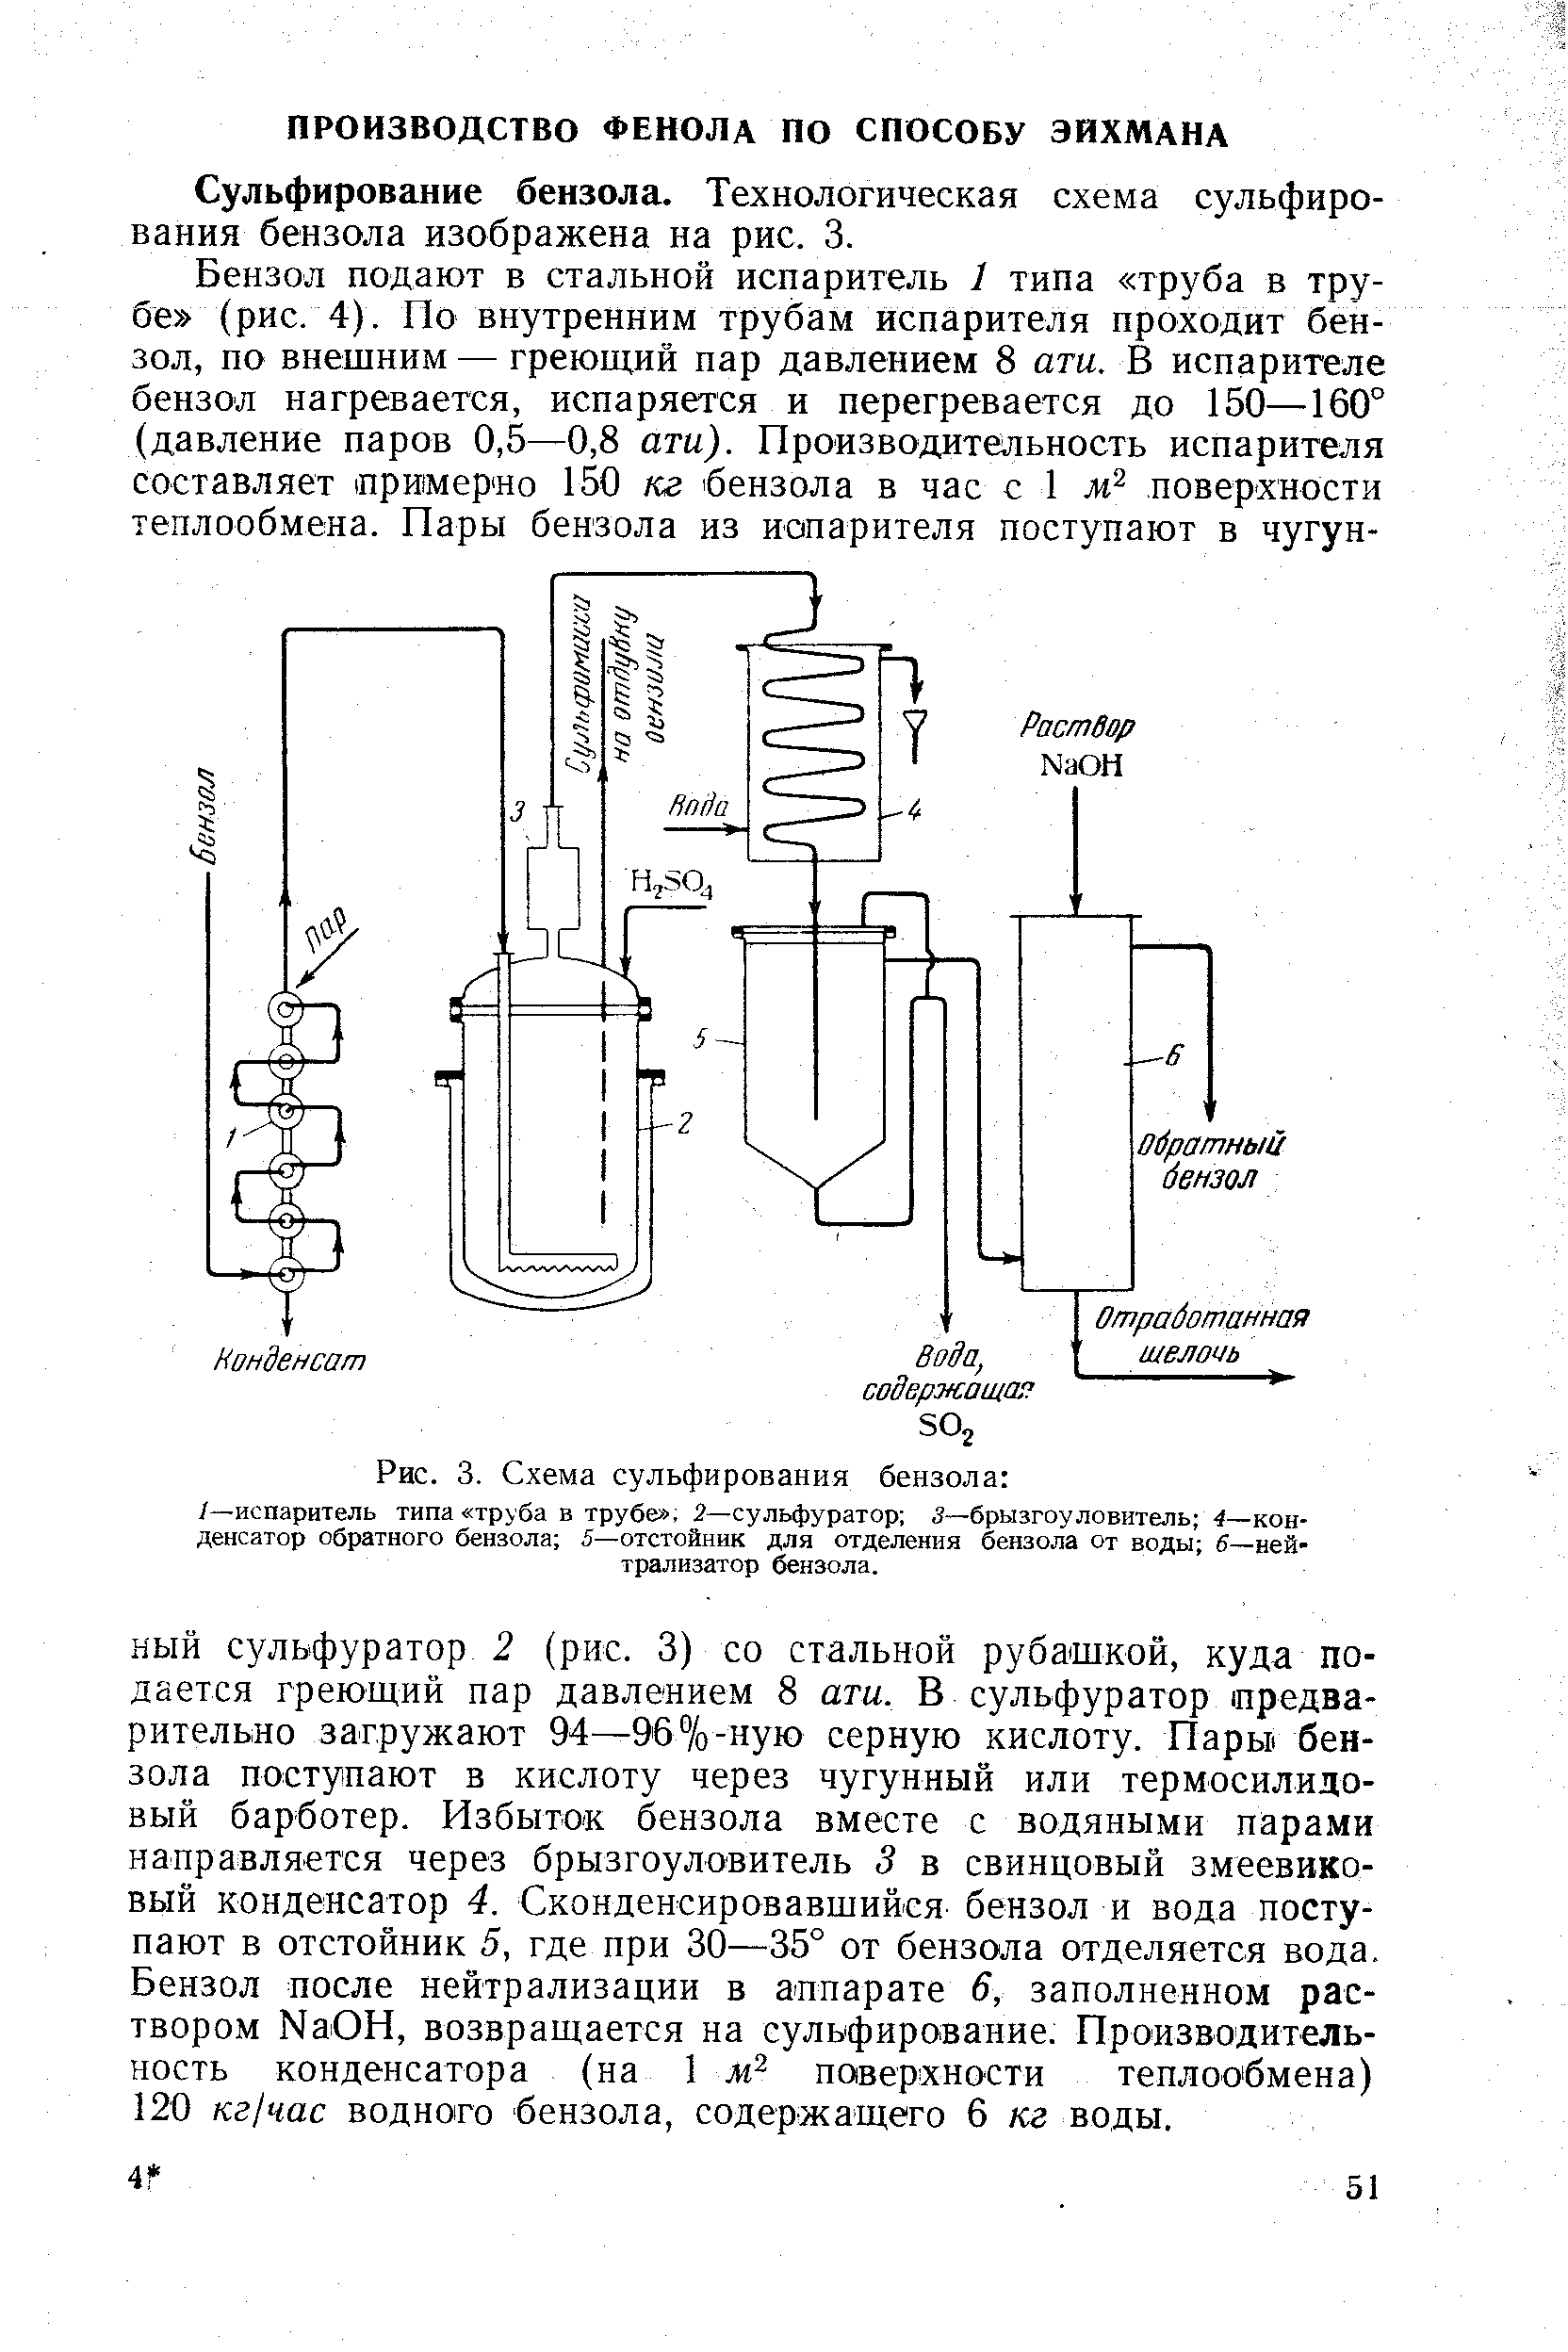 Сульфирование бензола. Технологическая схема сульфирования бензола изображена на рис. 3.